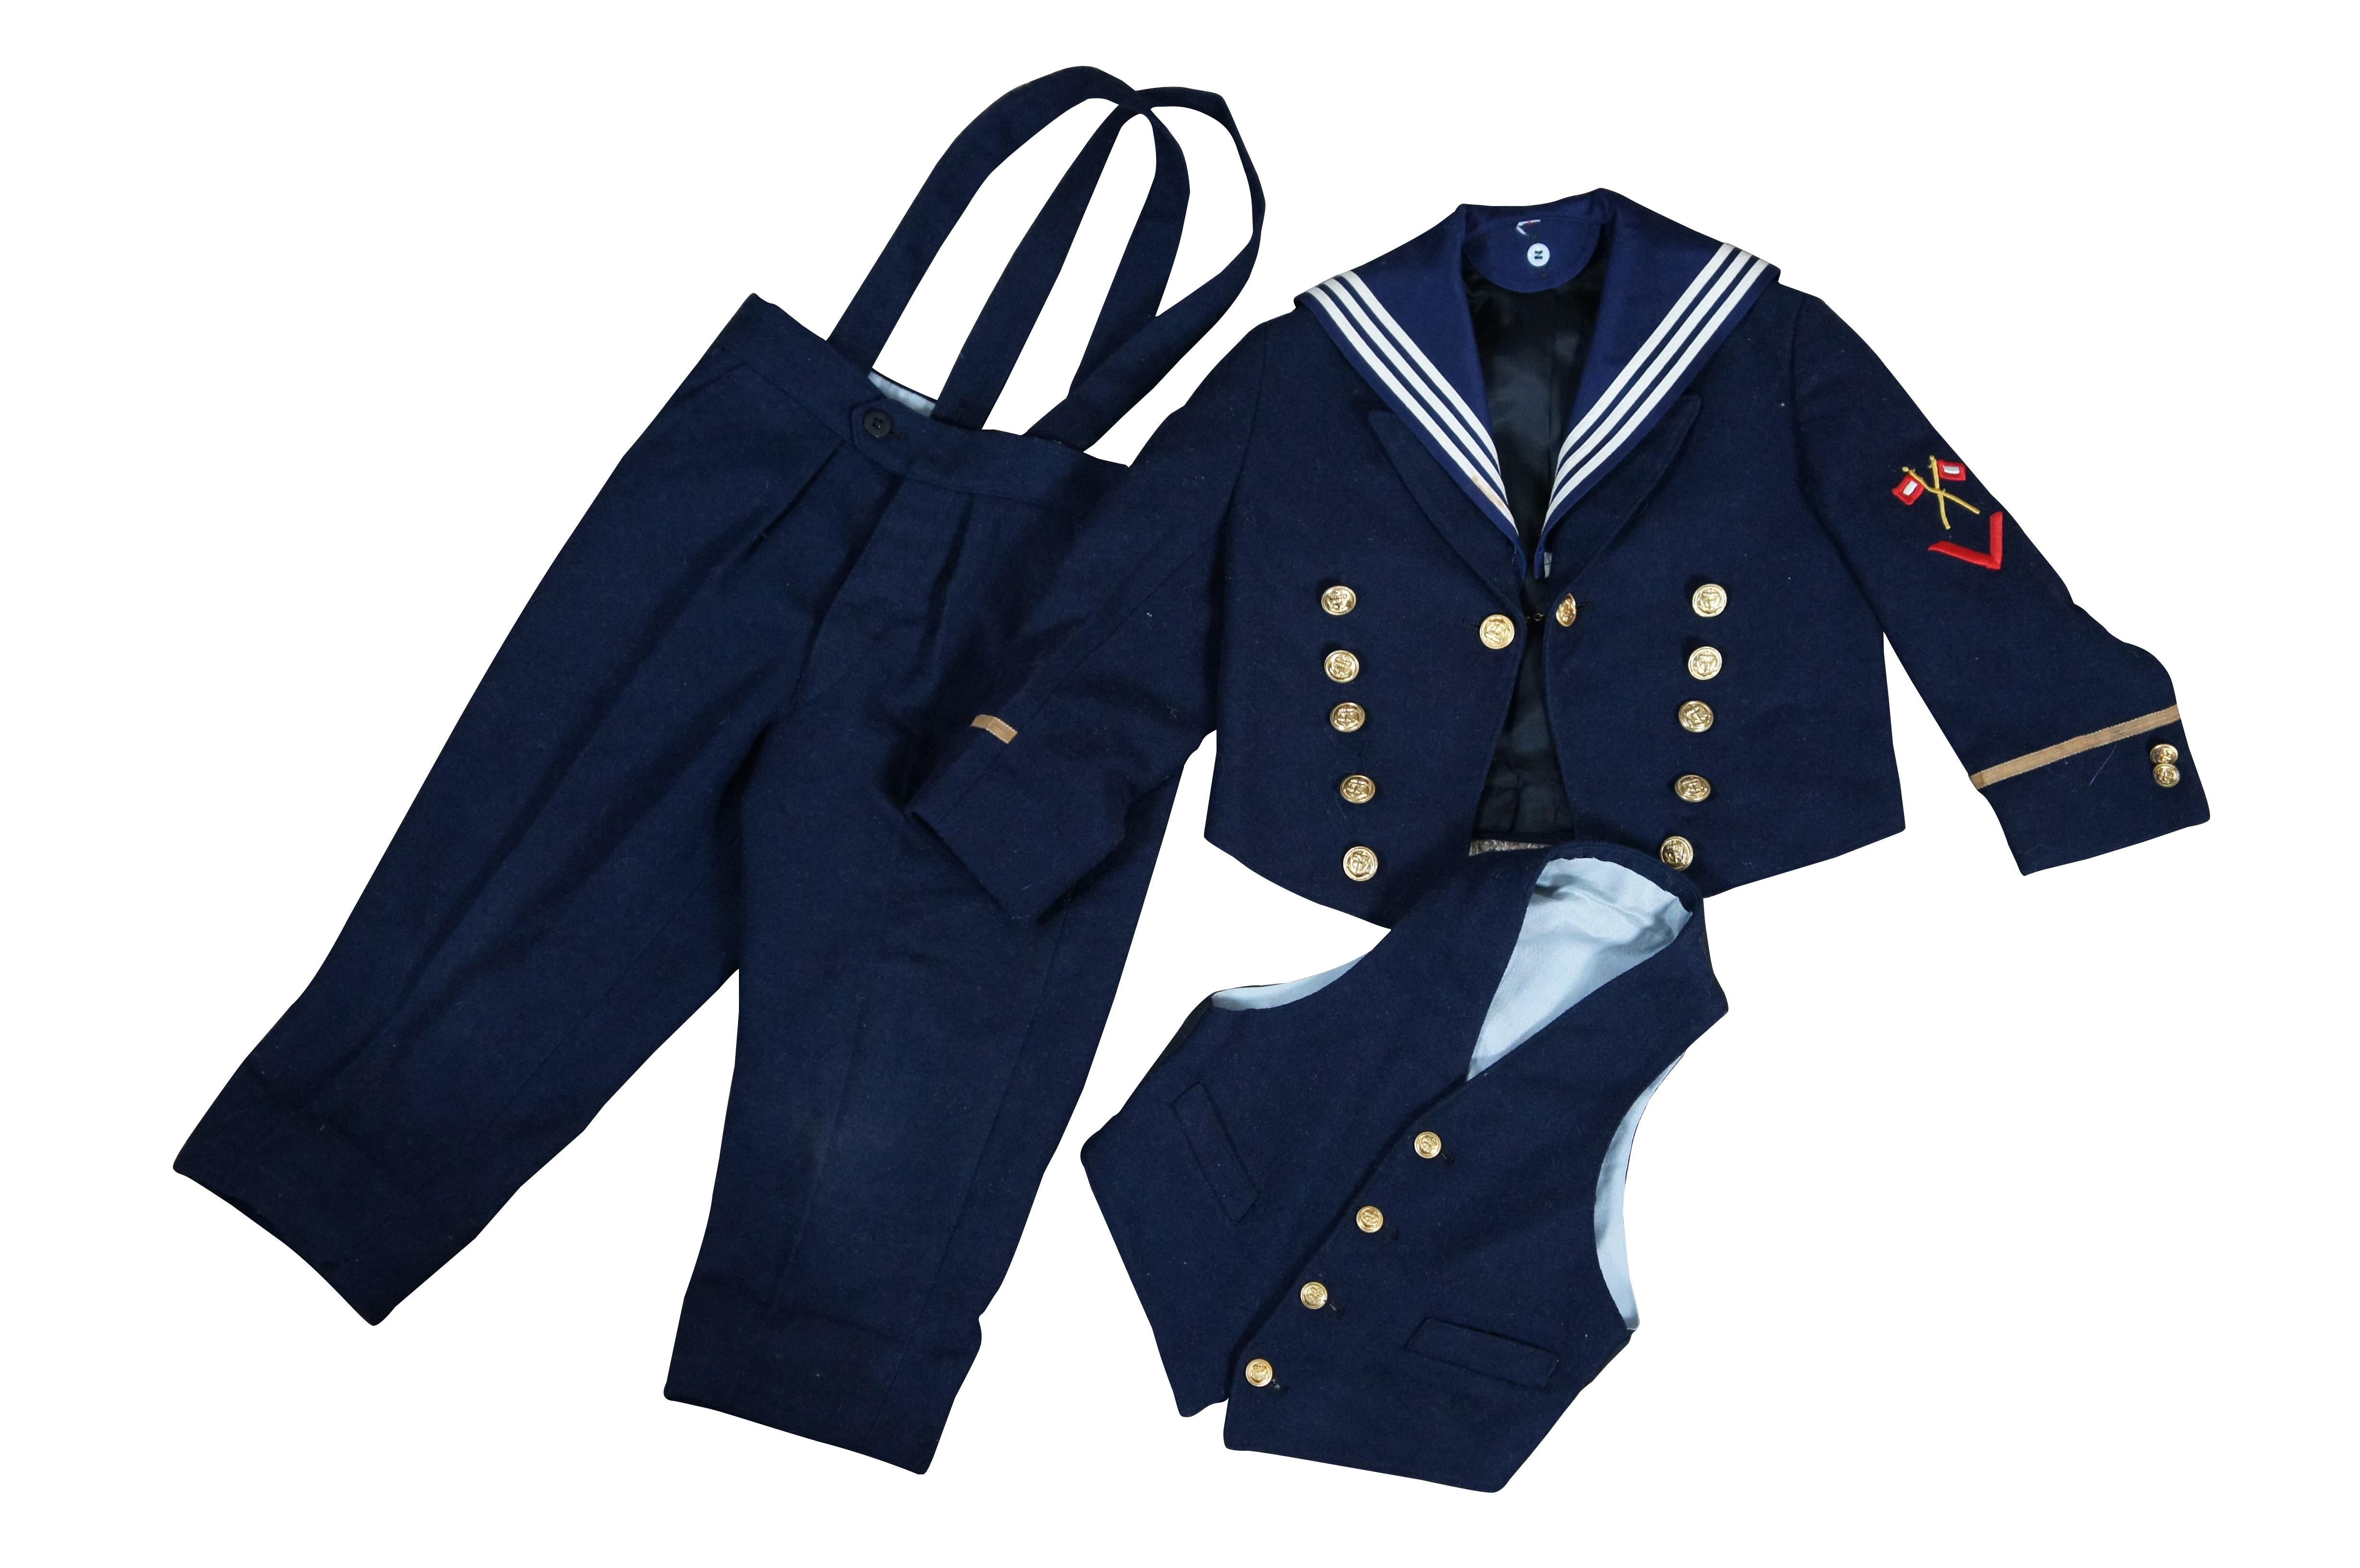 Antiker deutscher dreiteiliger Uniform- oder Matrosenanzug in Kleinkind-/Kinder-/Puppengröße aus den 1930er Jahren.  Aus marineblauer Wolle, mit Mantel, Weste und Hose mit weißen Streifen und goldenen Knöpfen.  Die Uniform ist wie eine Uniform der